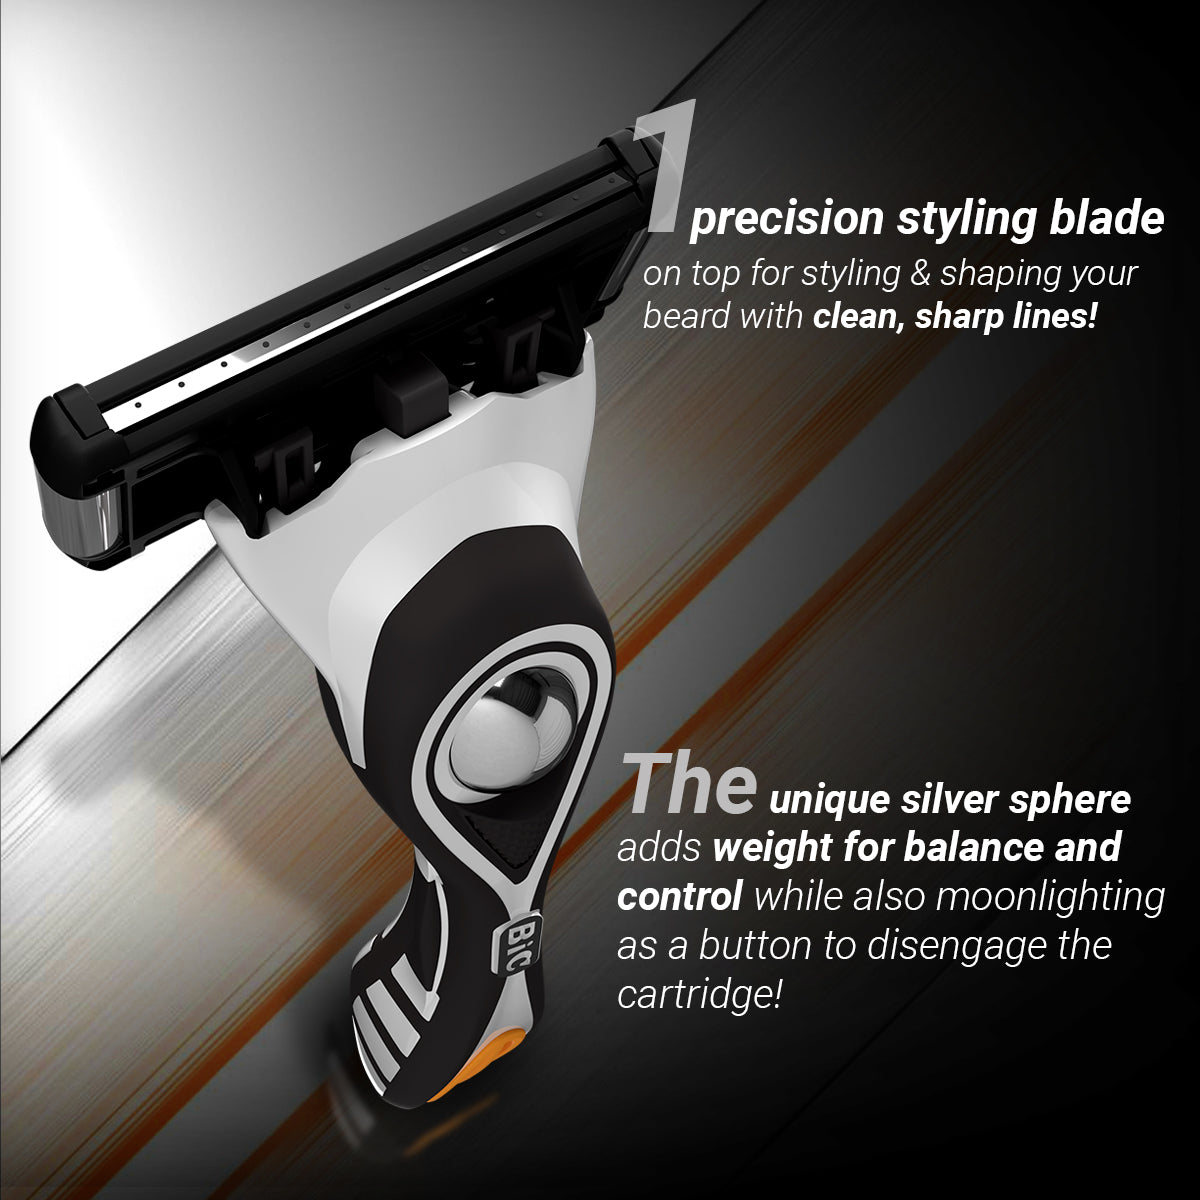 Zlade Ballistic Lite Trimmer & Zlade HyperGlide5 Pro Shaving Razor